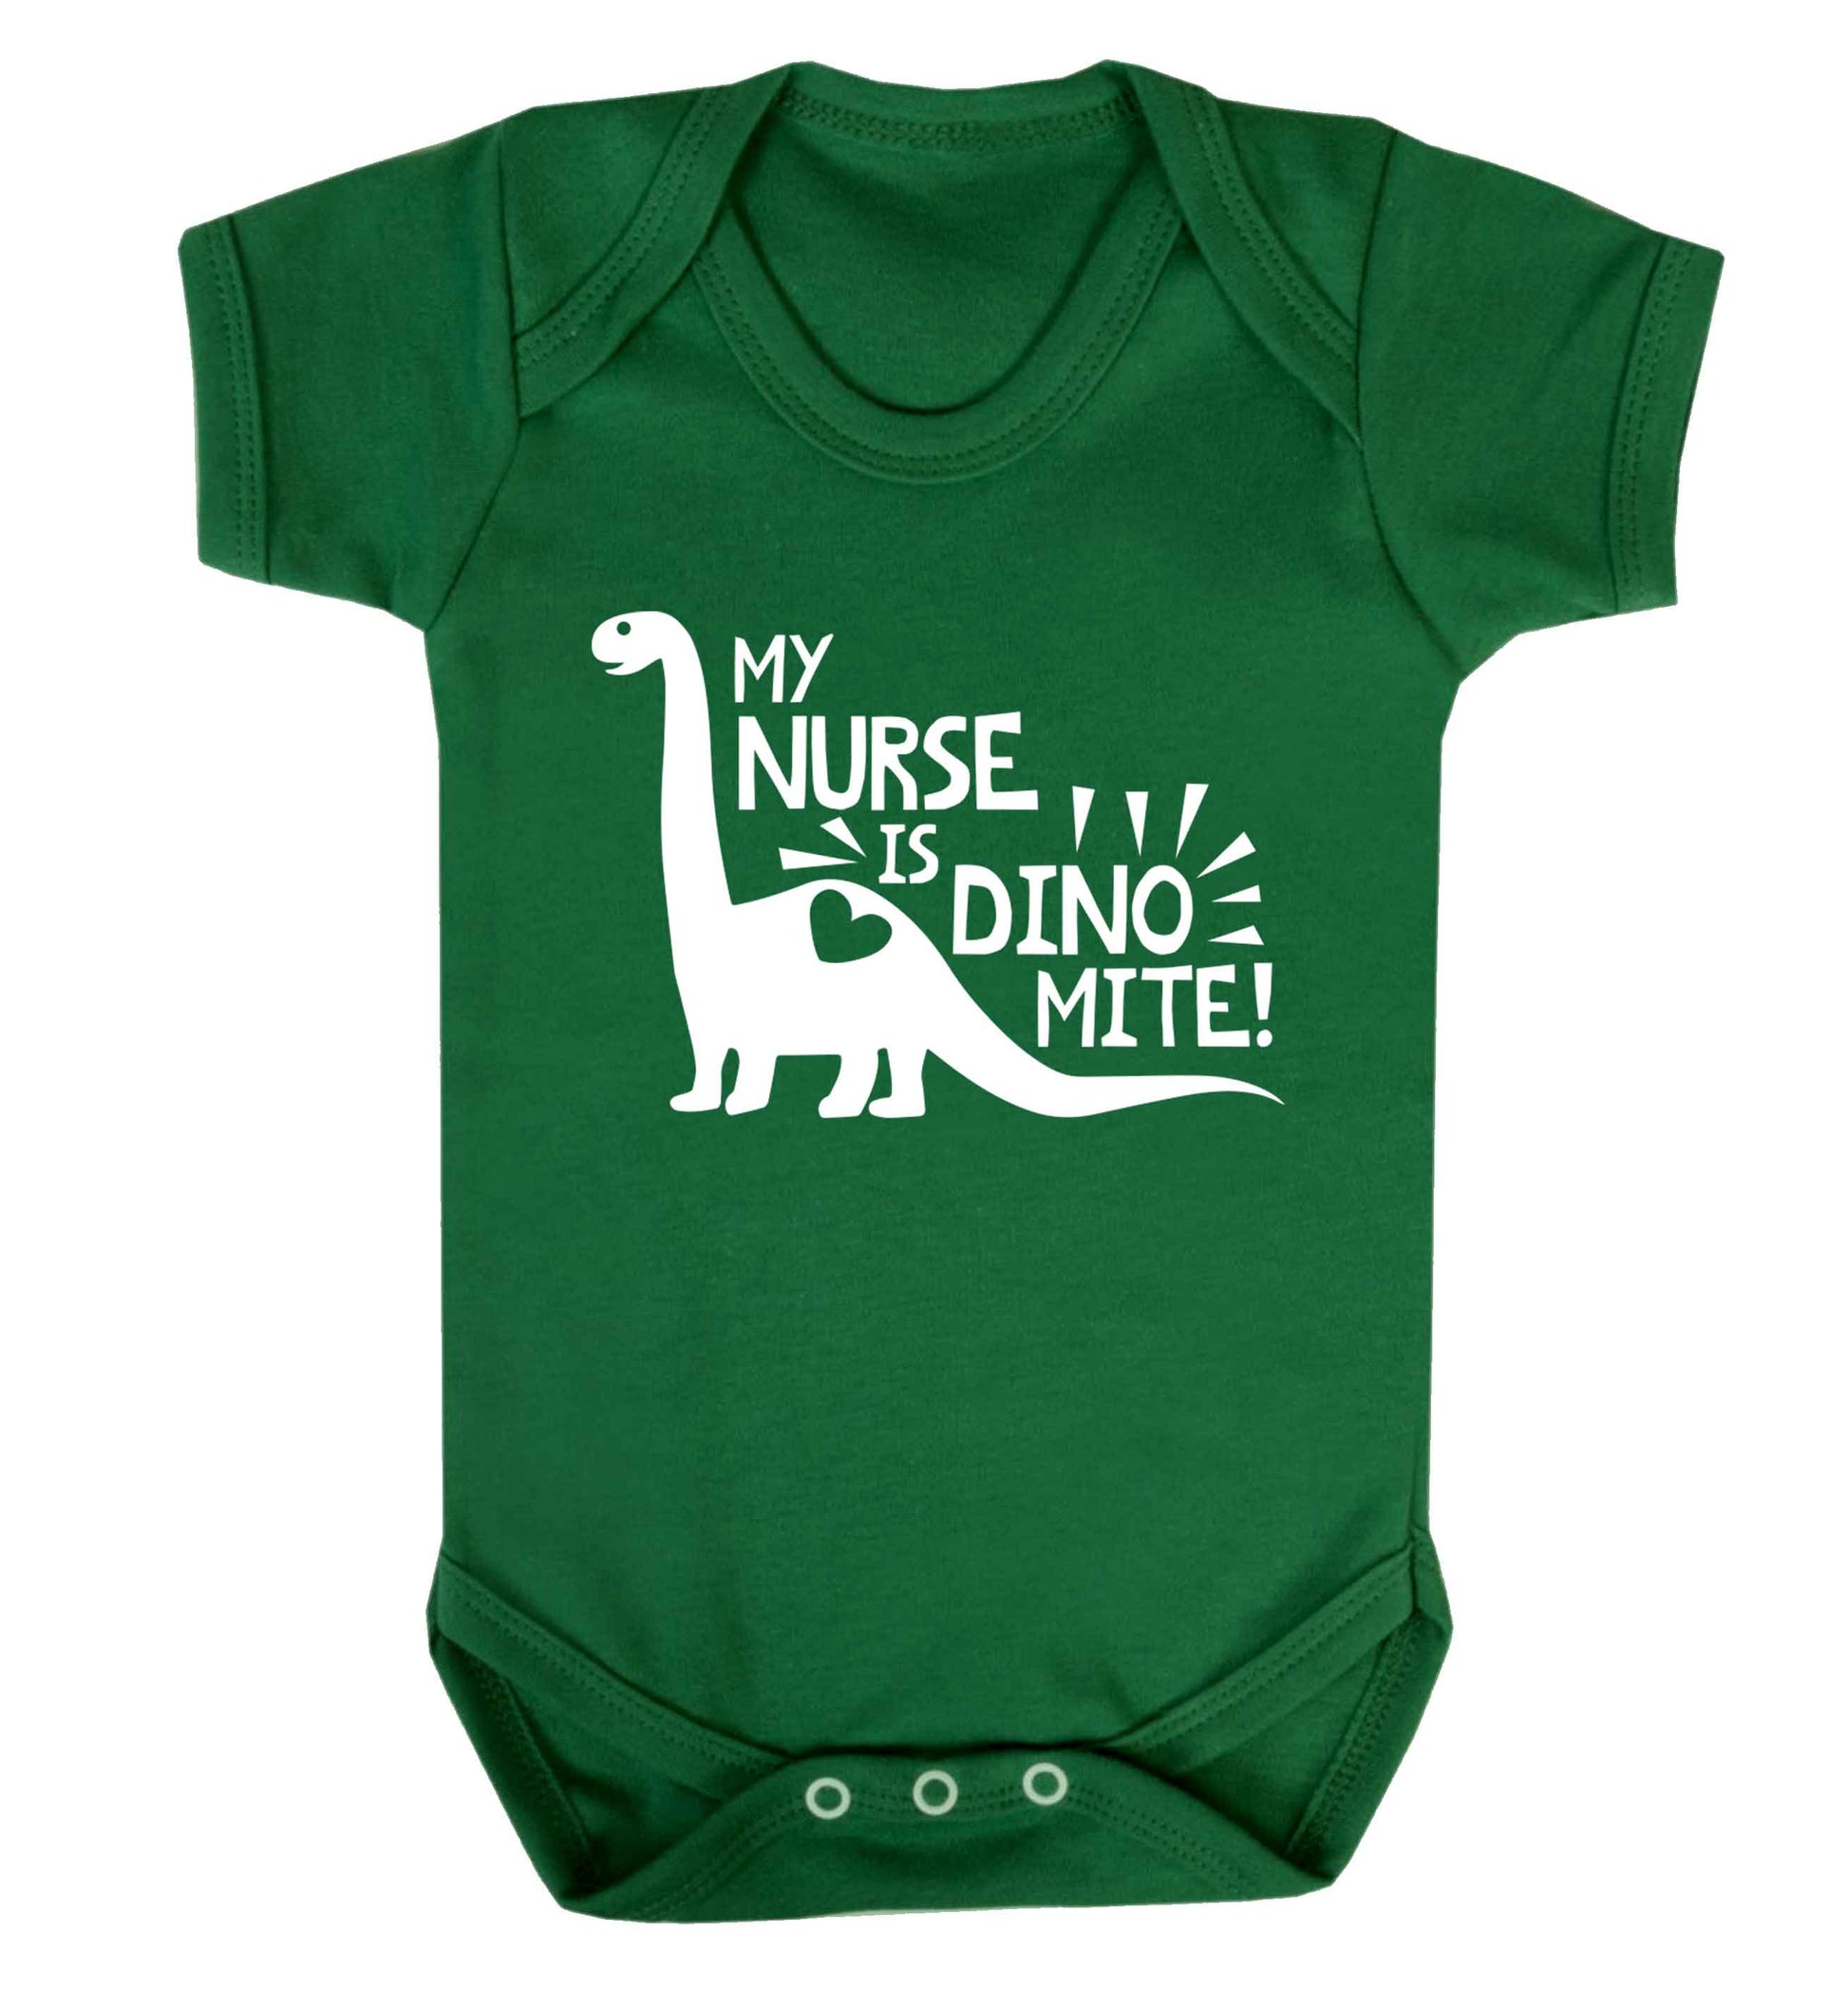 My nurse is dinomite! Baby Vest green 18-24 months